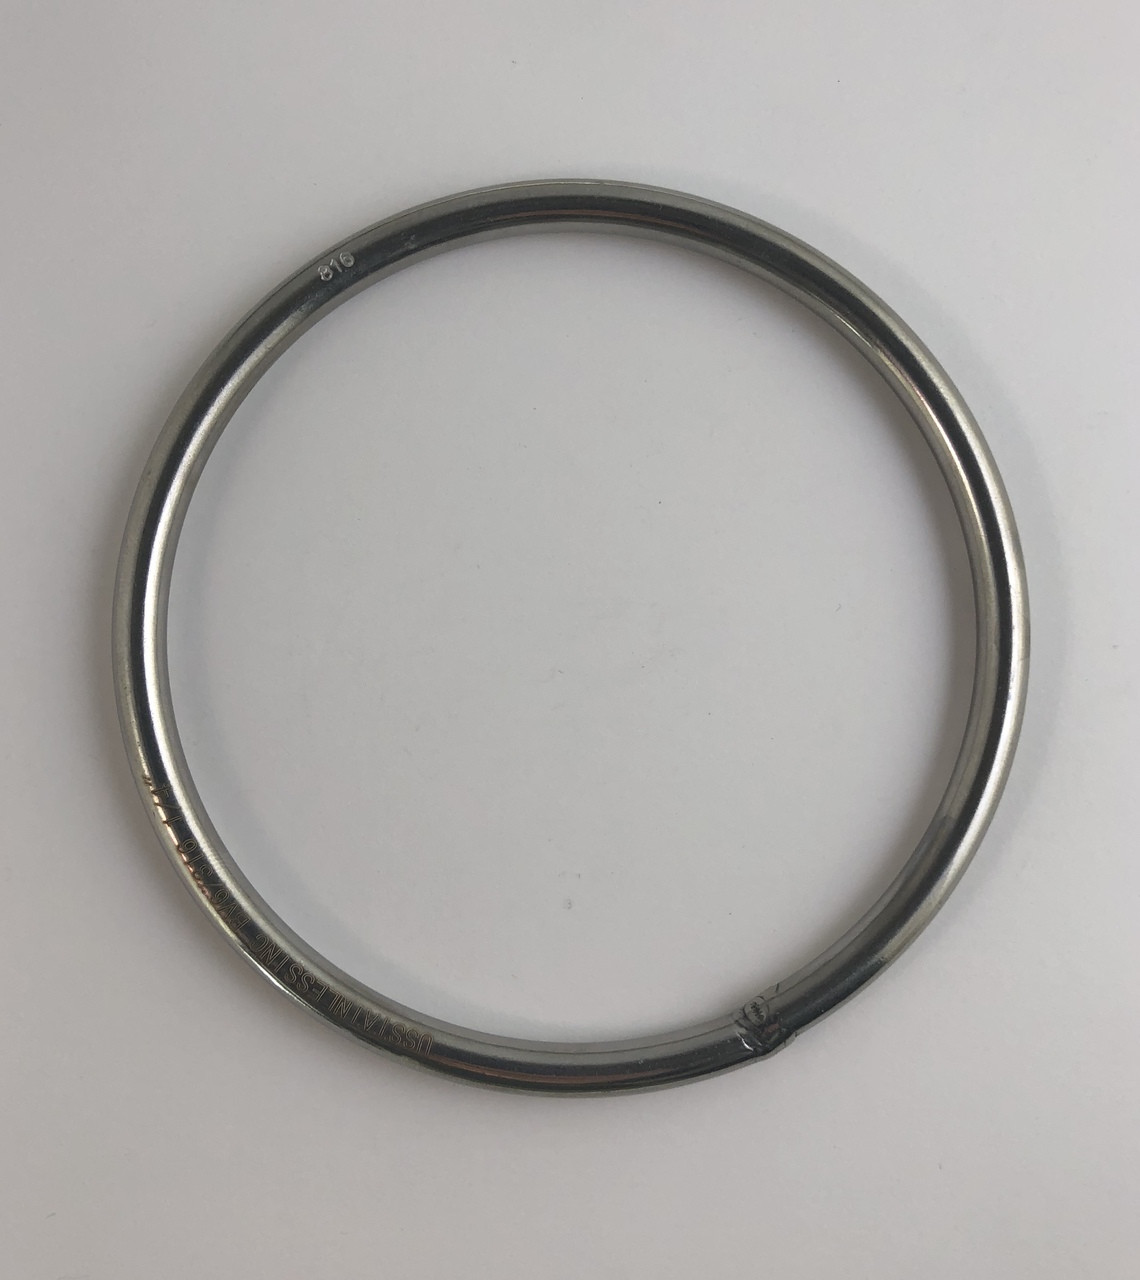 Welded metal O Rings 316 (A4 Marine) Stainless Steel Rings